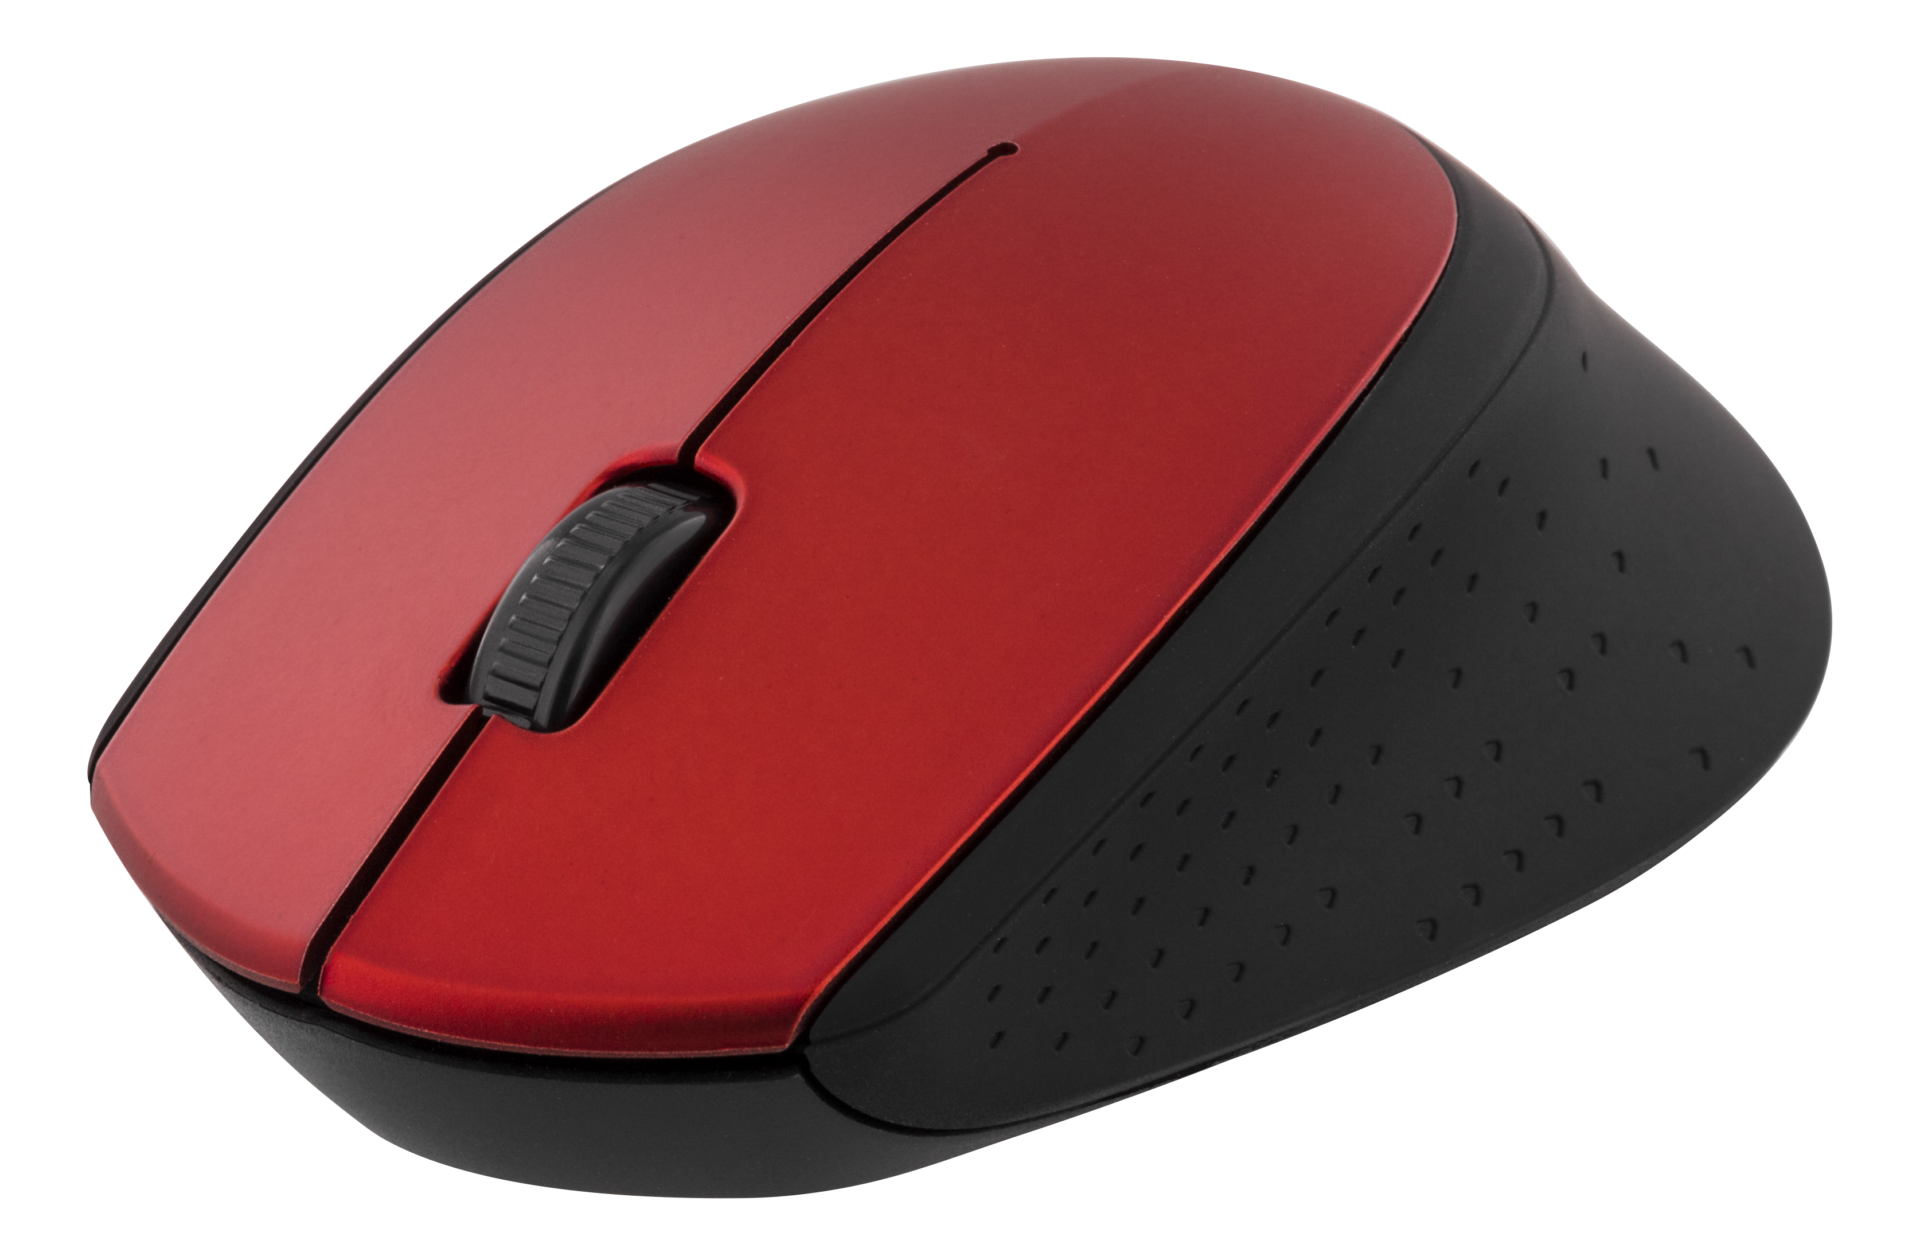 Беспроводная мышь красная. MS-1020b мышь. Беспроводная мышь EUROTECH 1200 dpi. USB Wireless Mouse - Red. Мышь компьютерная беспроводная красная.